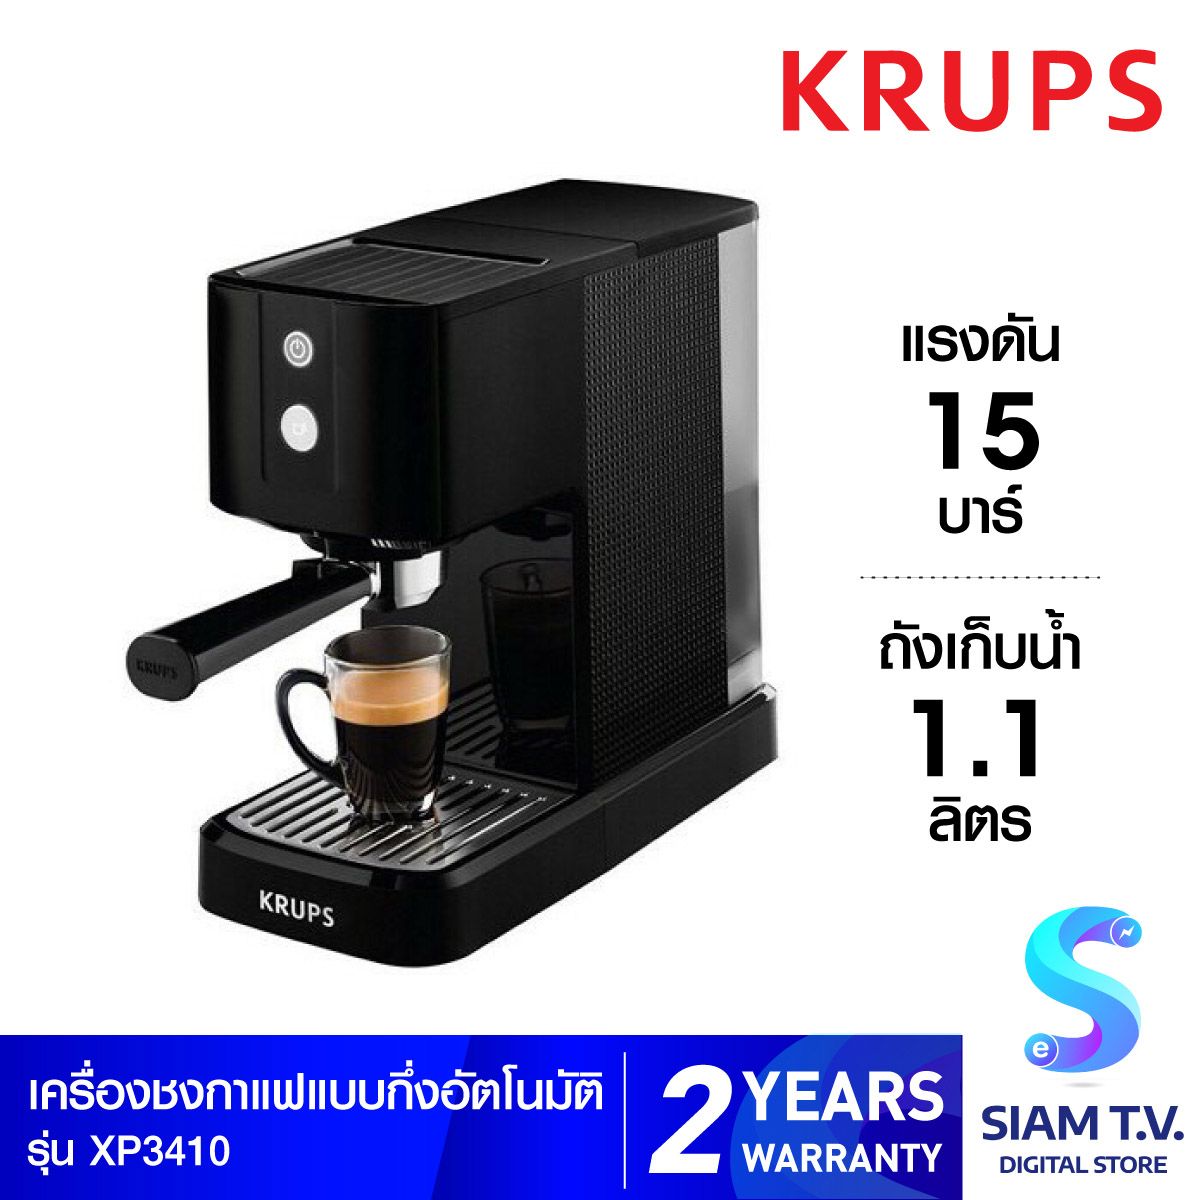 KRUPS เครื่องชงกาแฟ KRUPS รุ่น XP3410